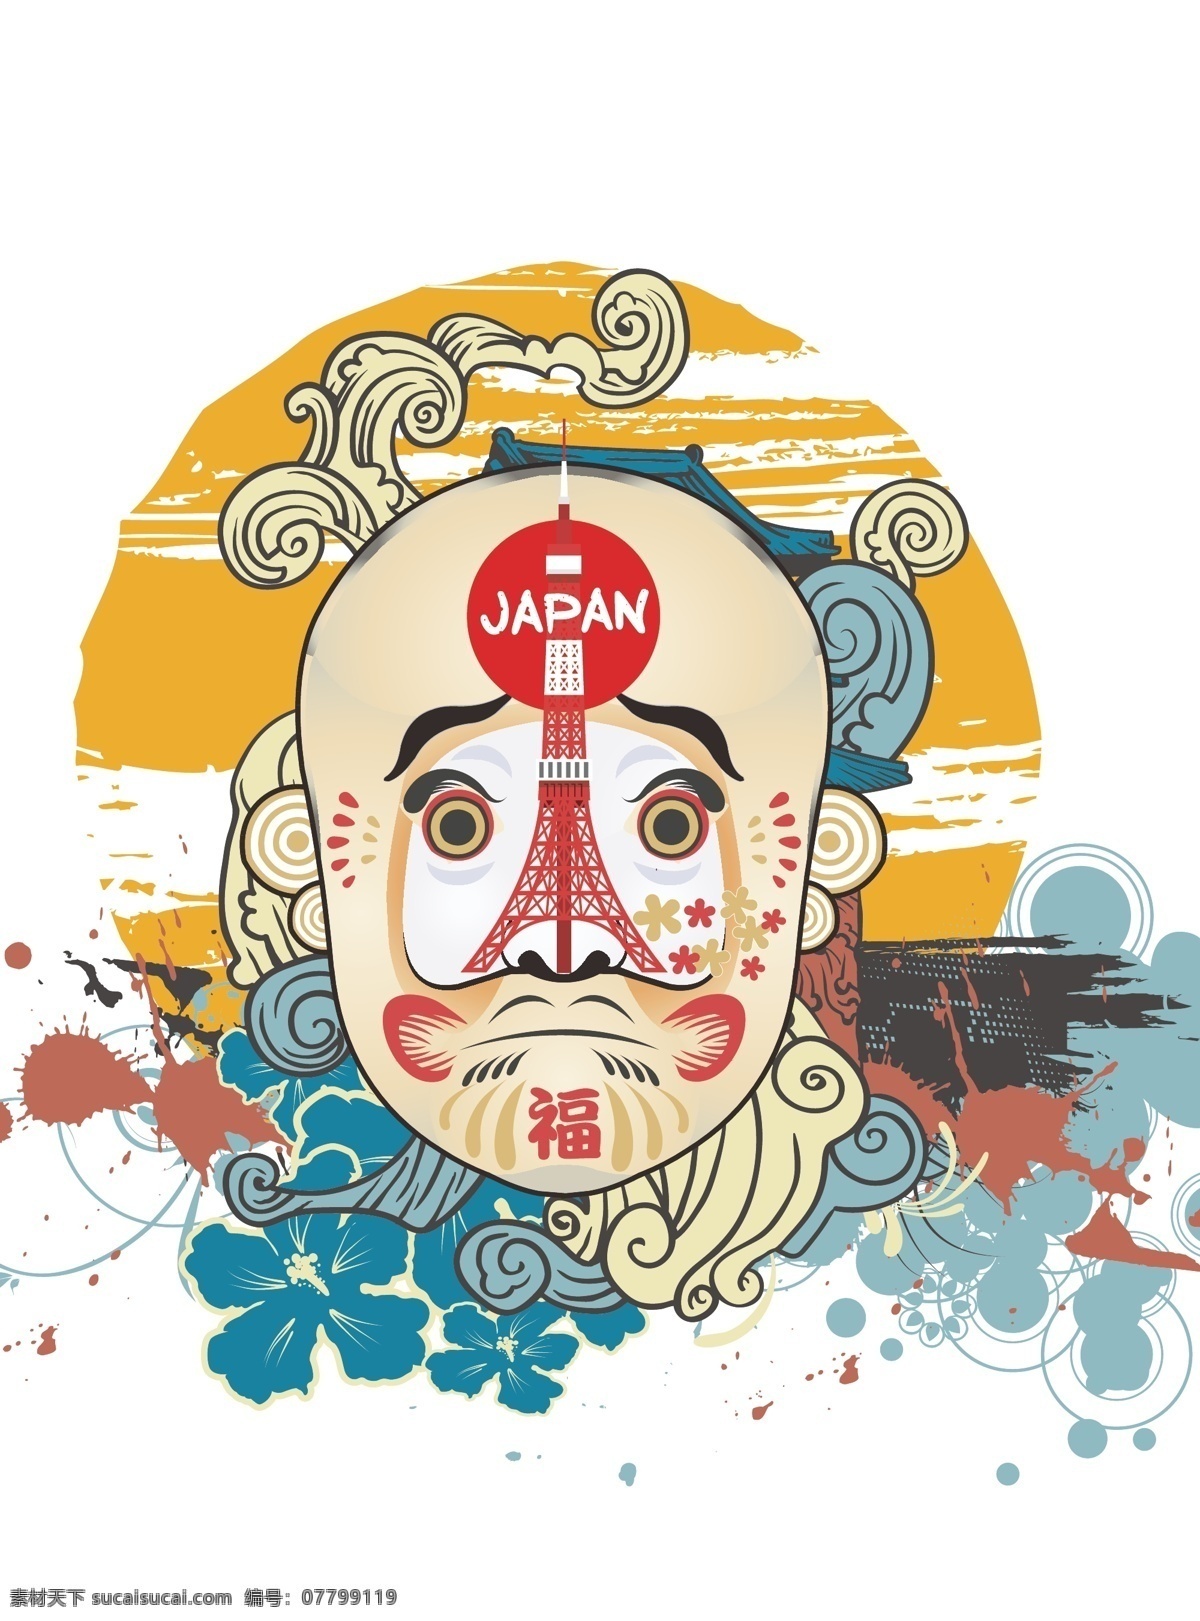 脸谱日本风格 脸谱 日本风 日系 中国风 传统 浮世绘 京剧 中国元素 中日结合 文化艺术 传统文化